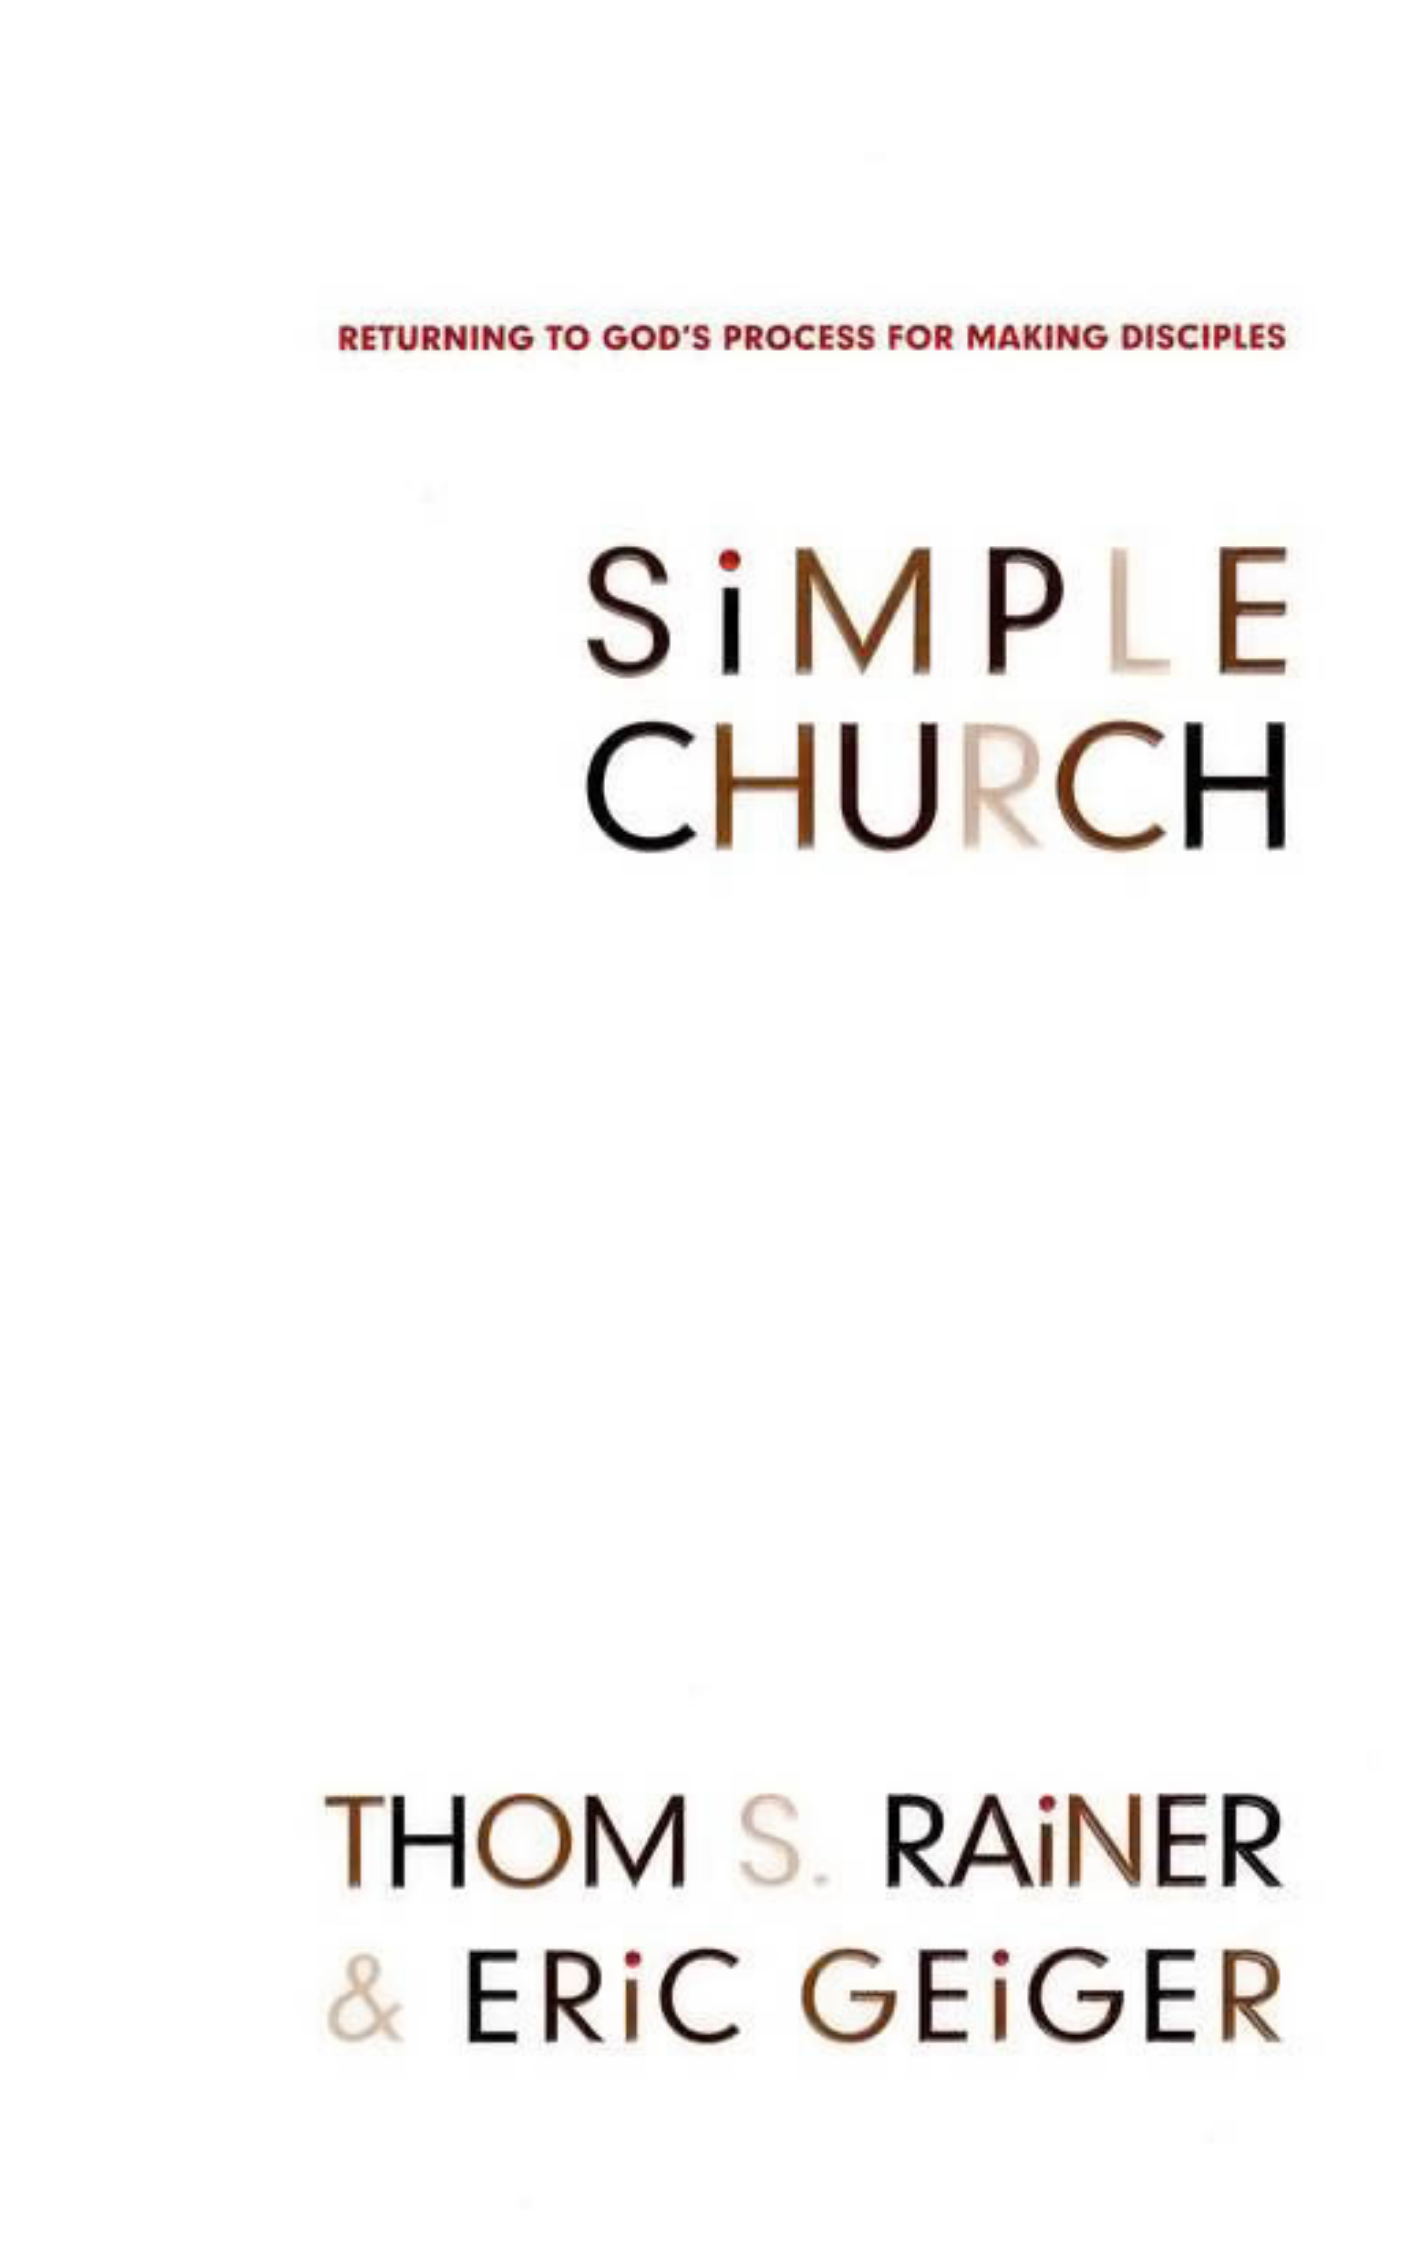 SIMPLE CHURCH